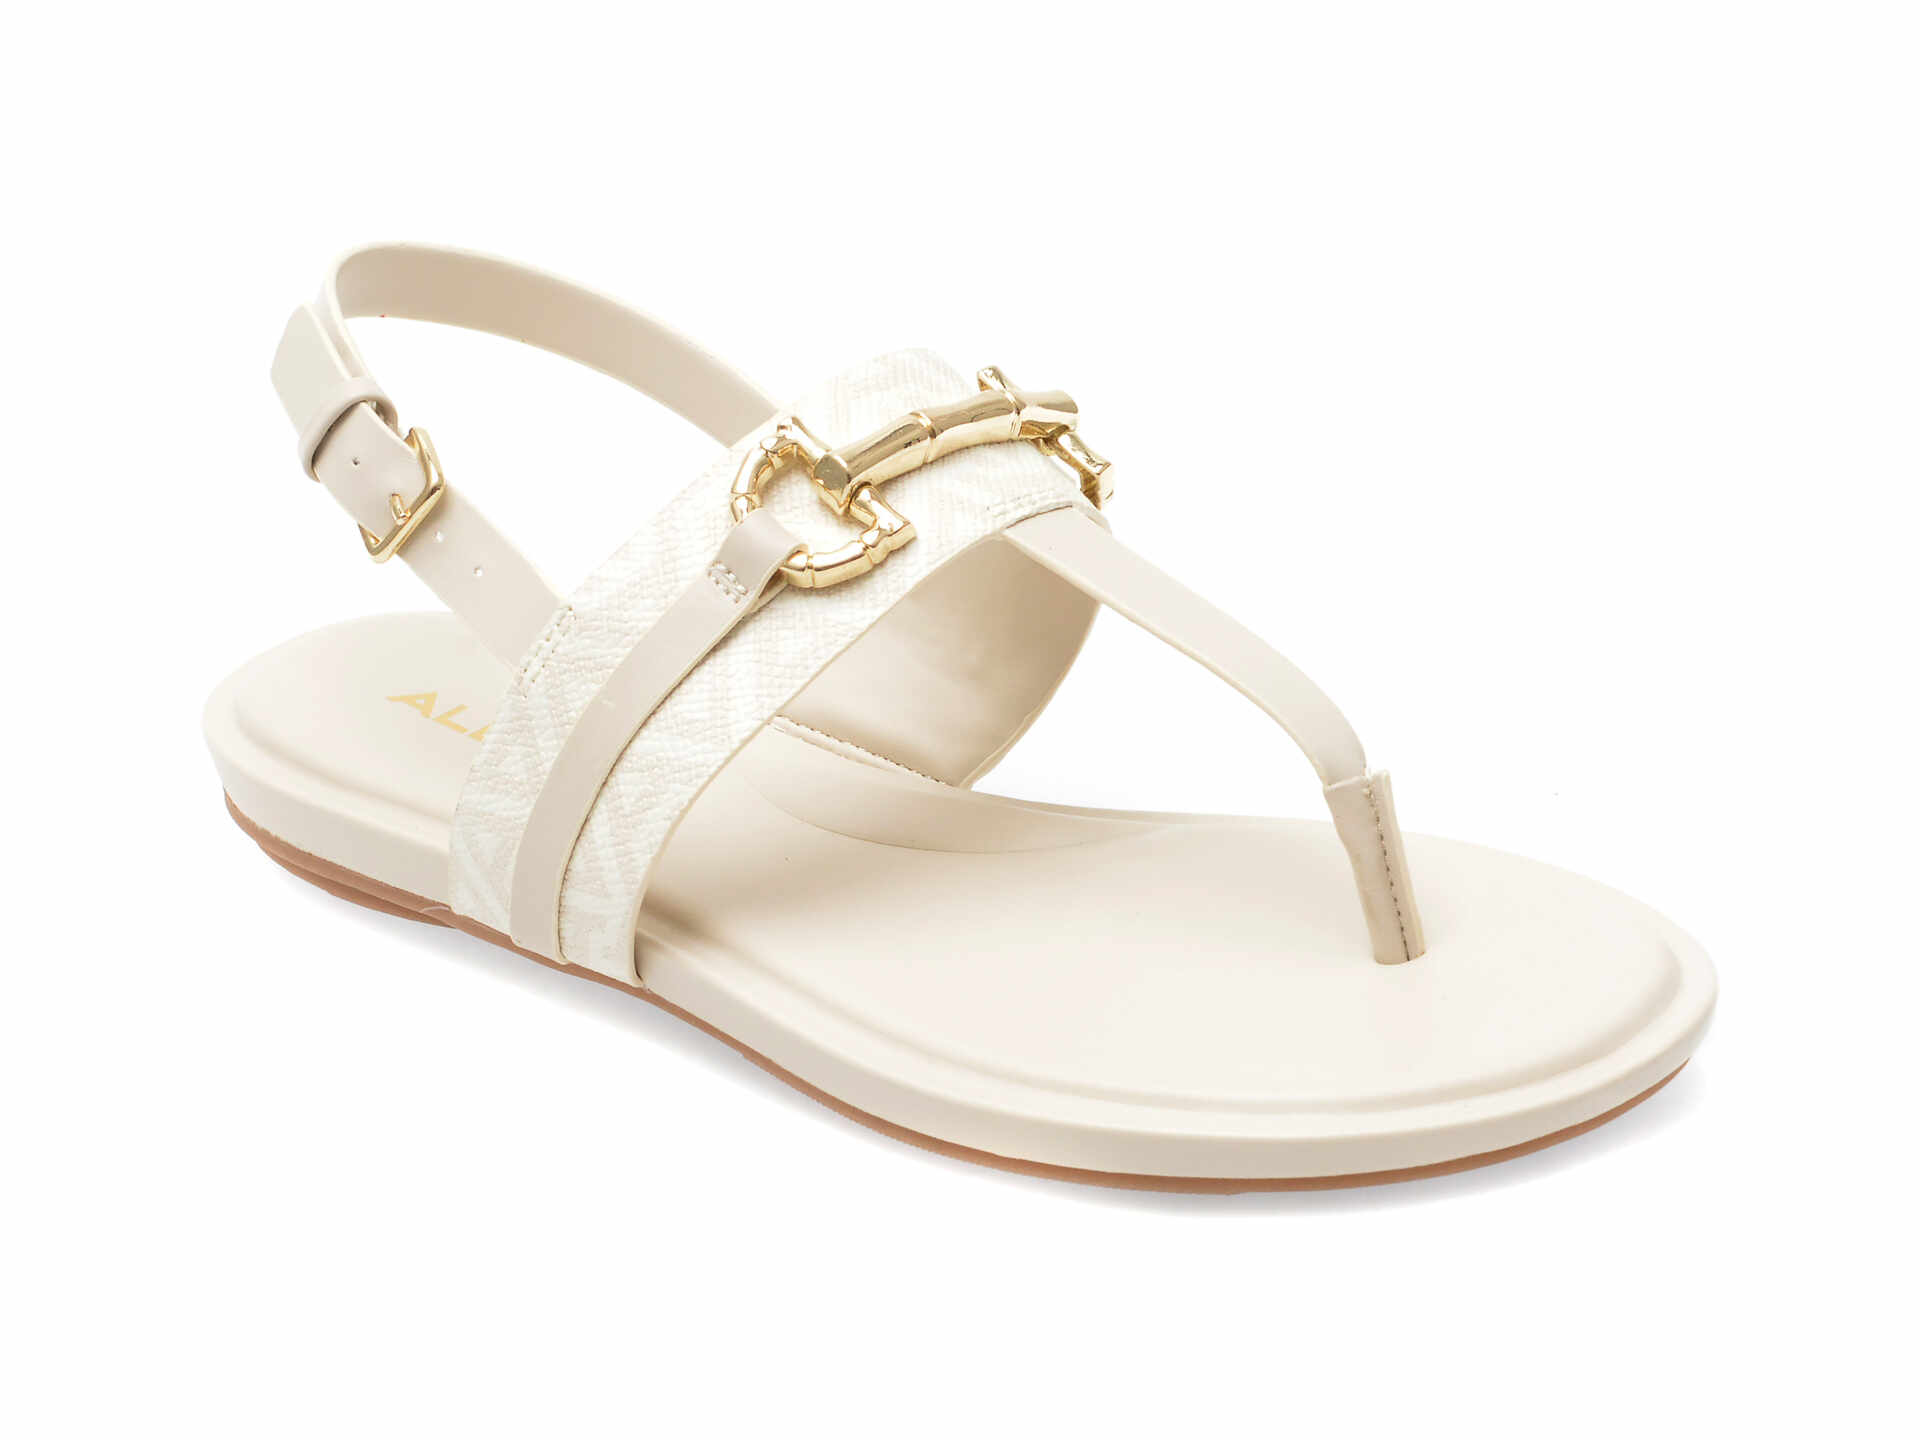 Sandale ALDO albe, TANY110, din piele ecologica